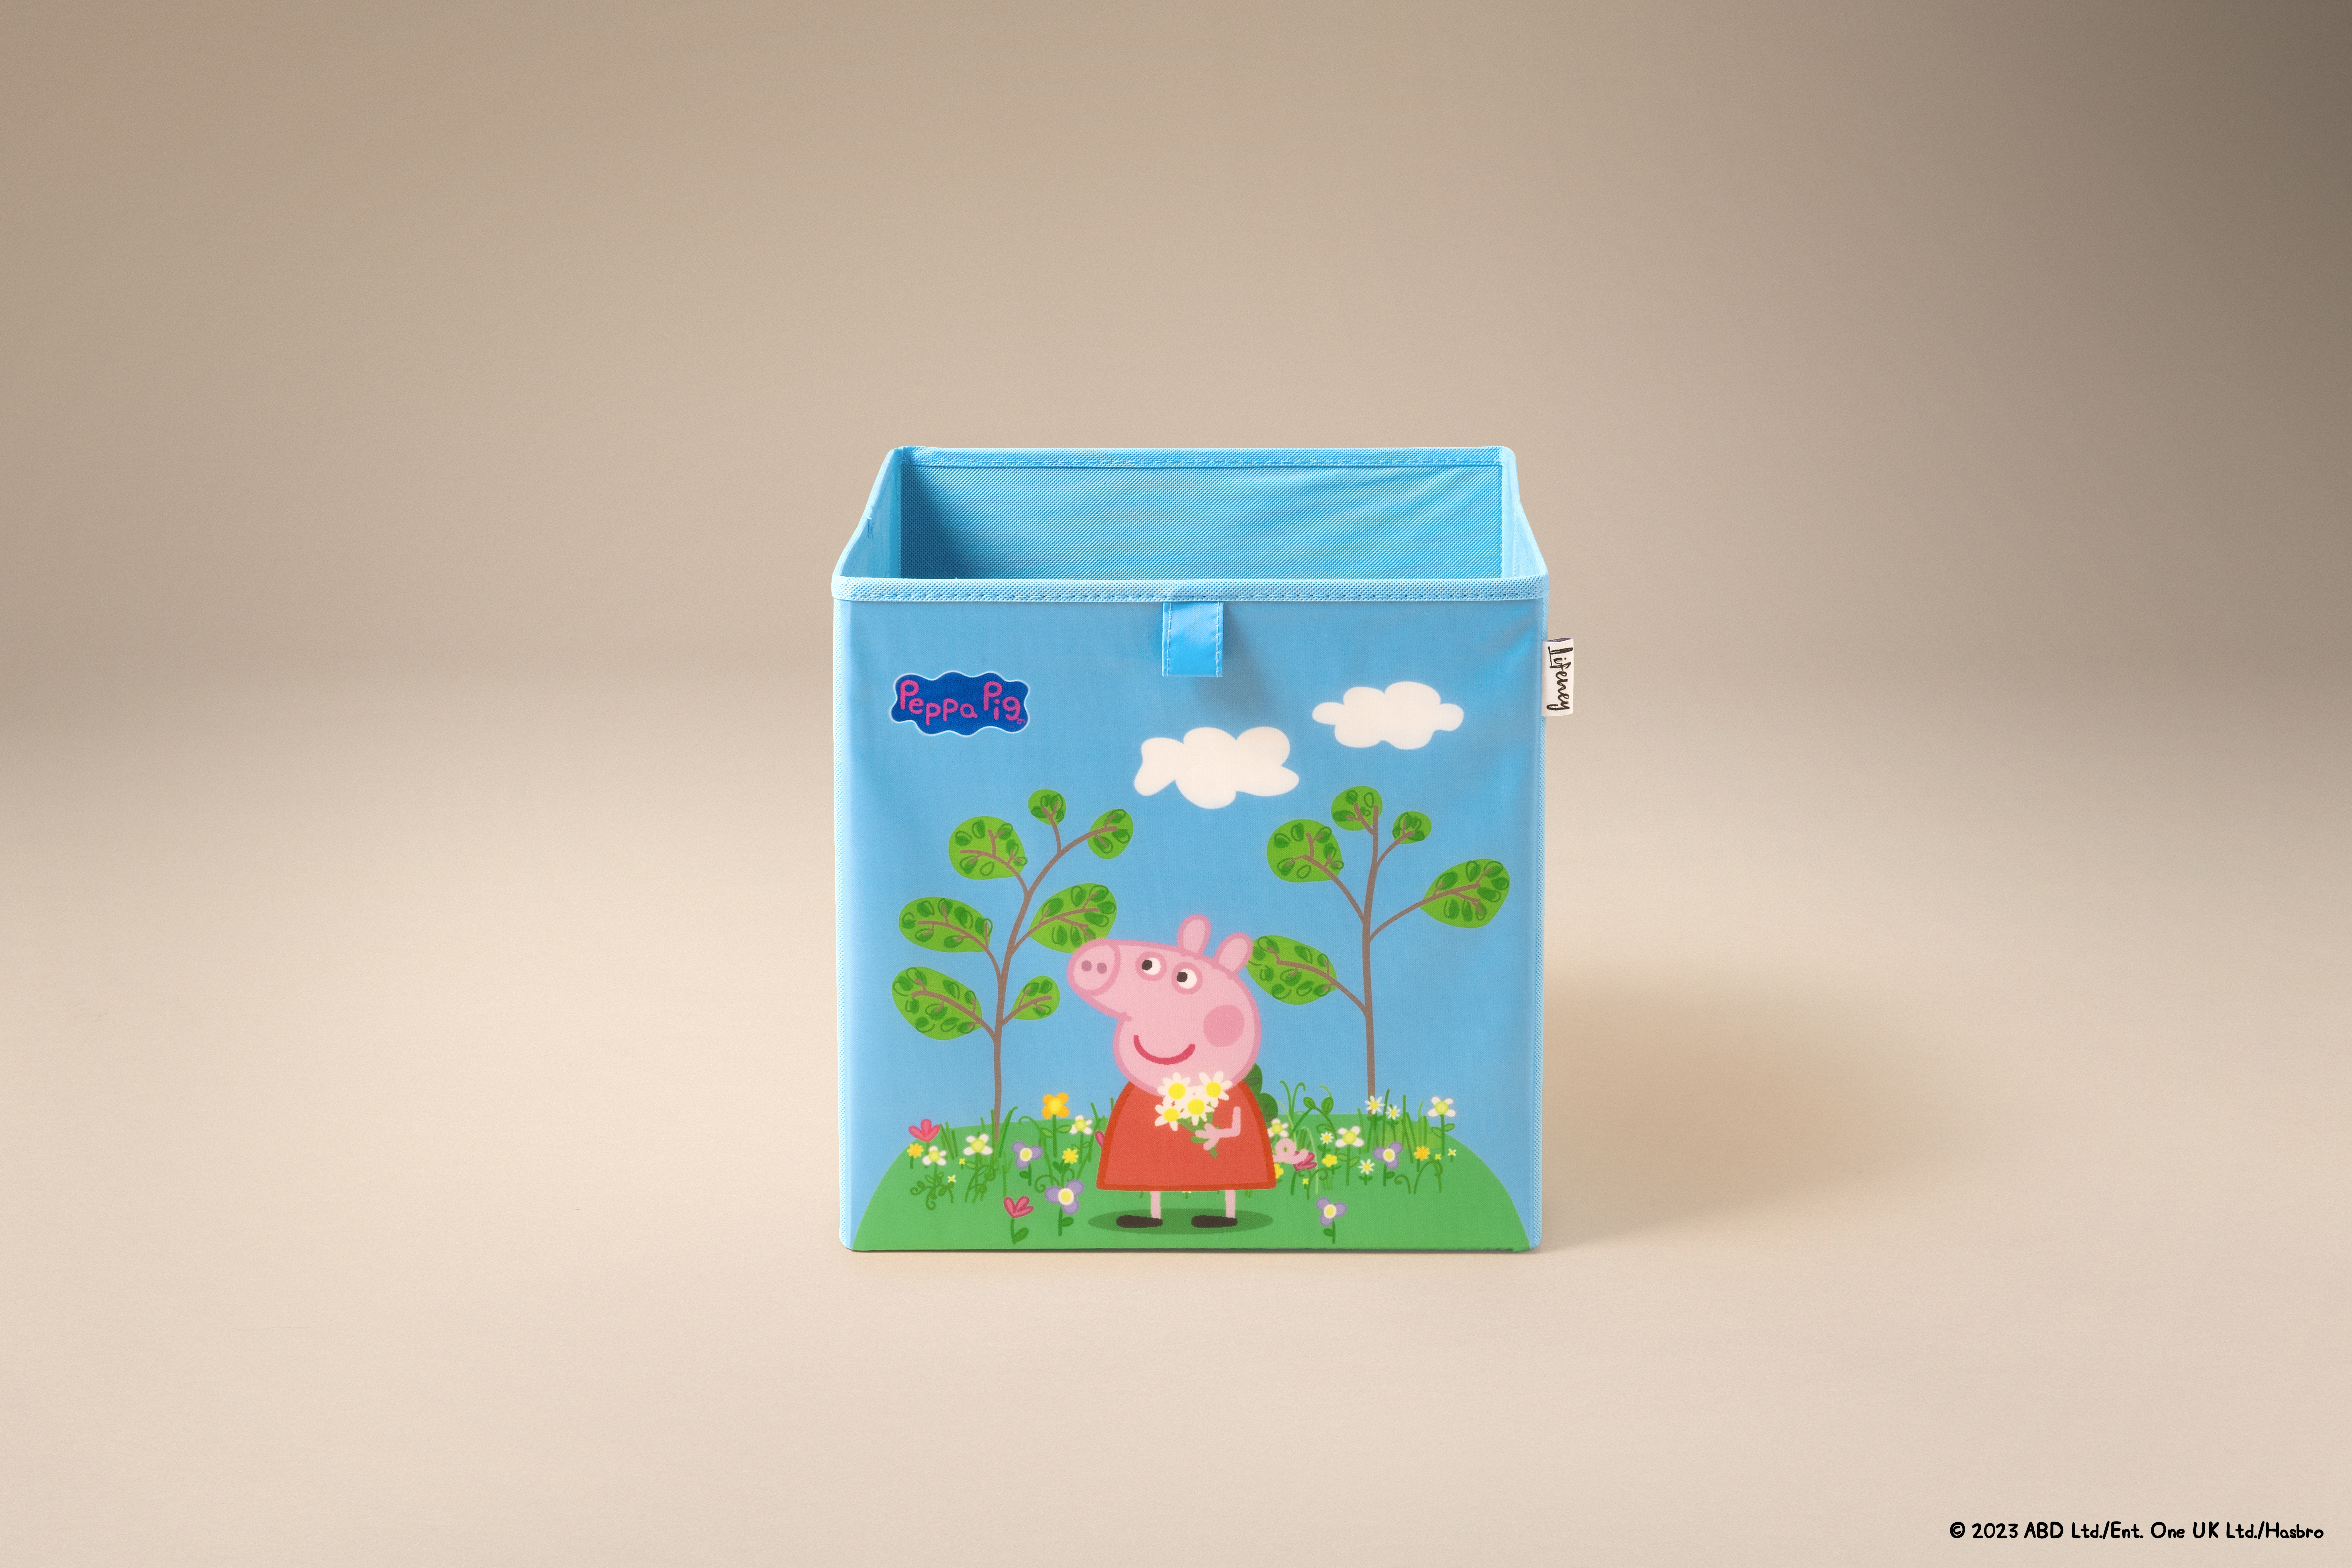 Lifeney - Caja de Almacenamiento Peppa Pig en Prado de Flores, Ideal para Juguetes y Accesorios, Diseño de Peppa Pig, con 5 Años de Garantía